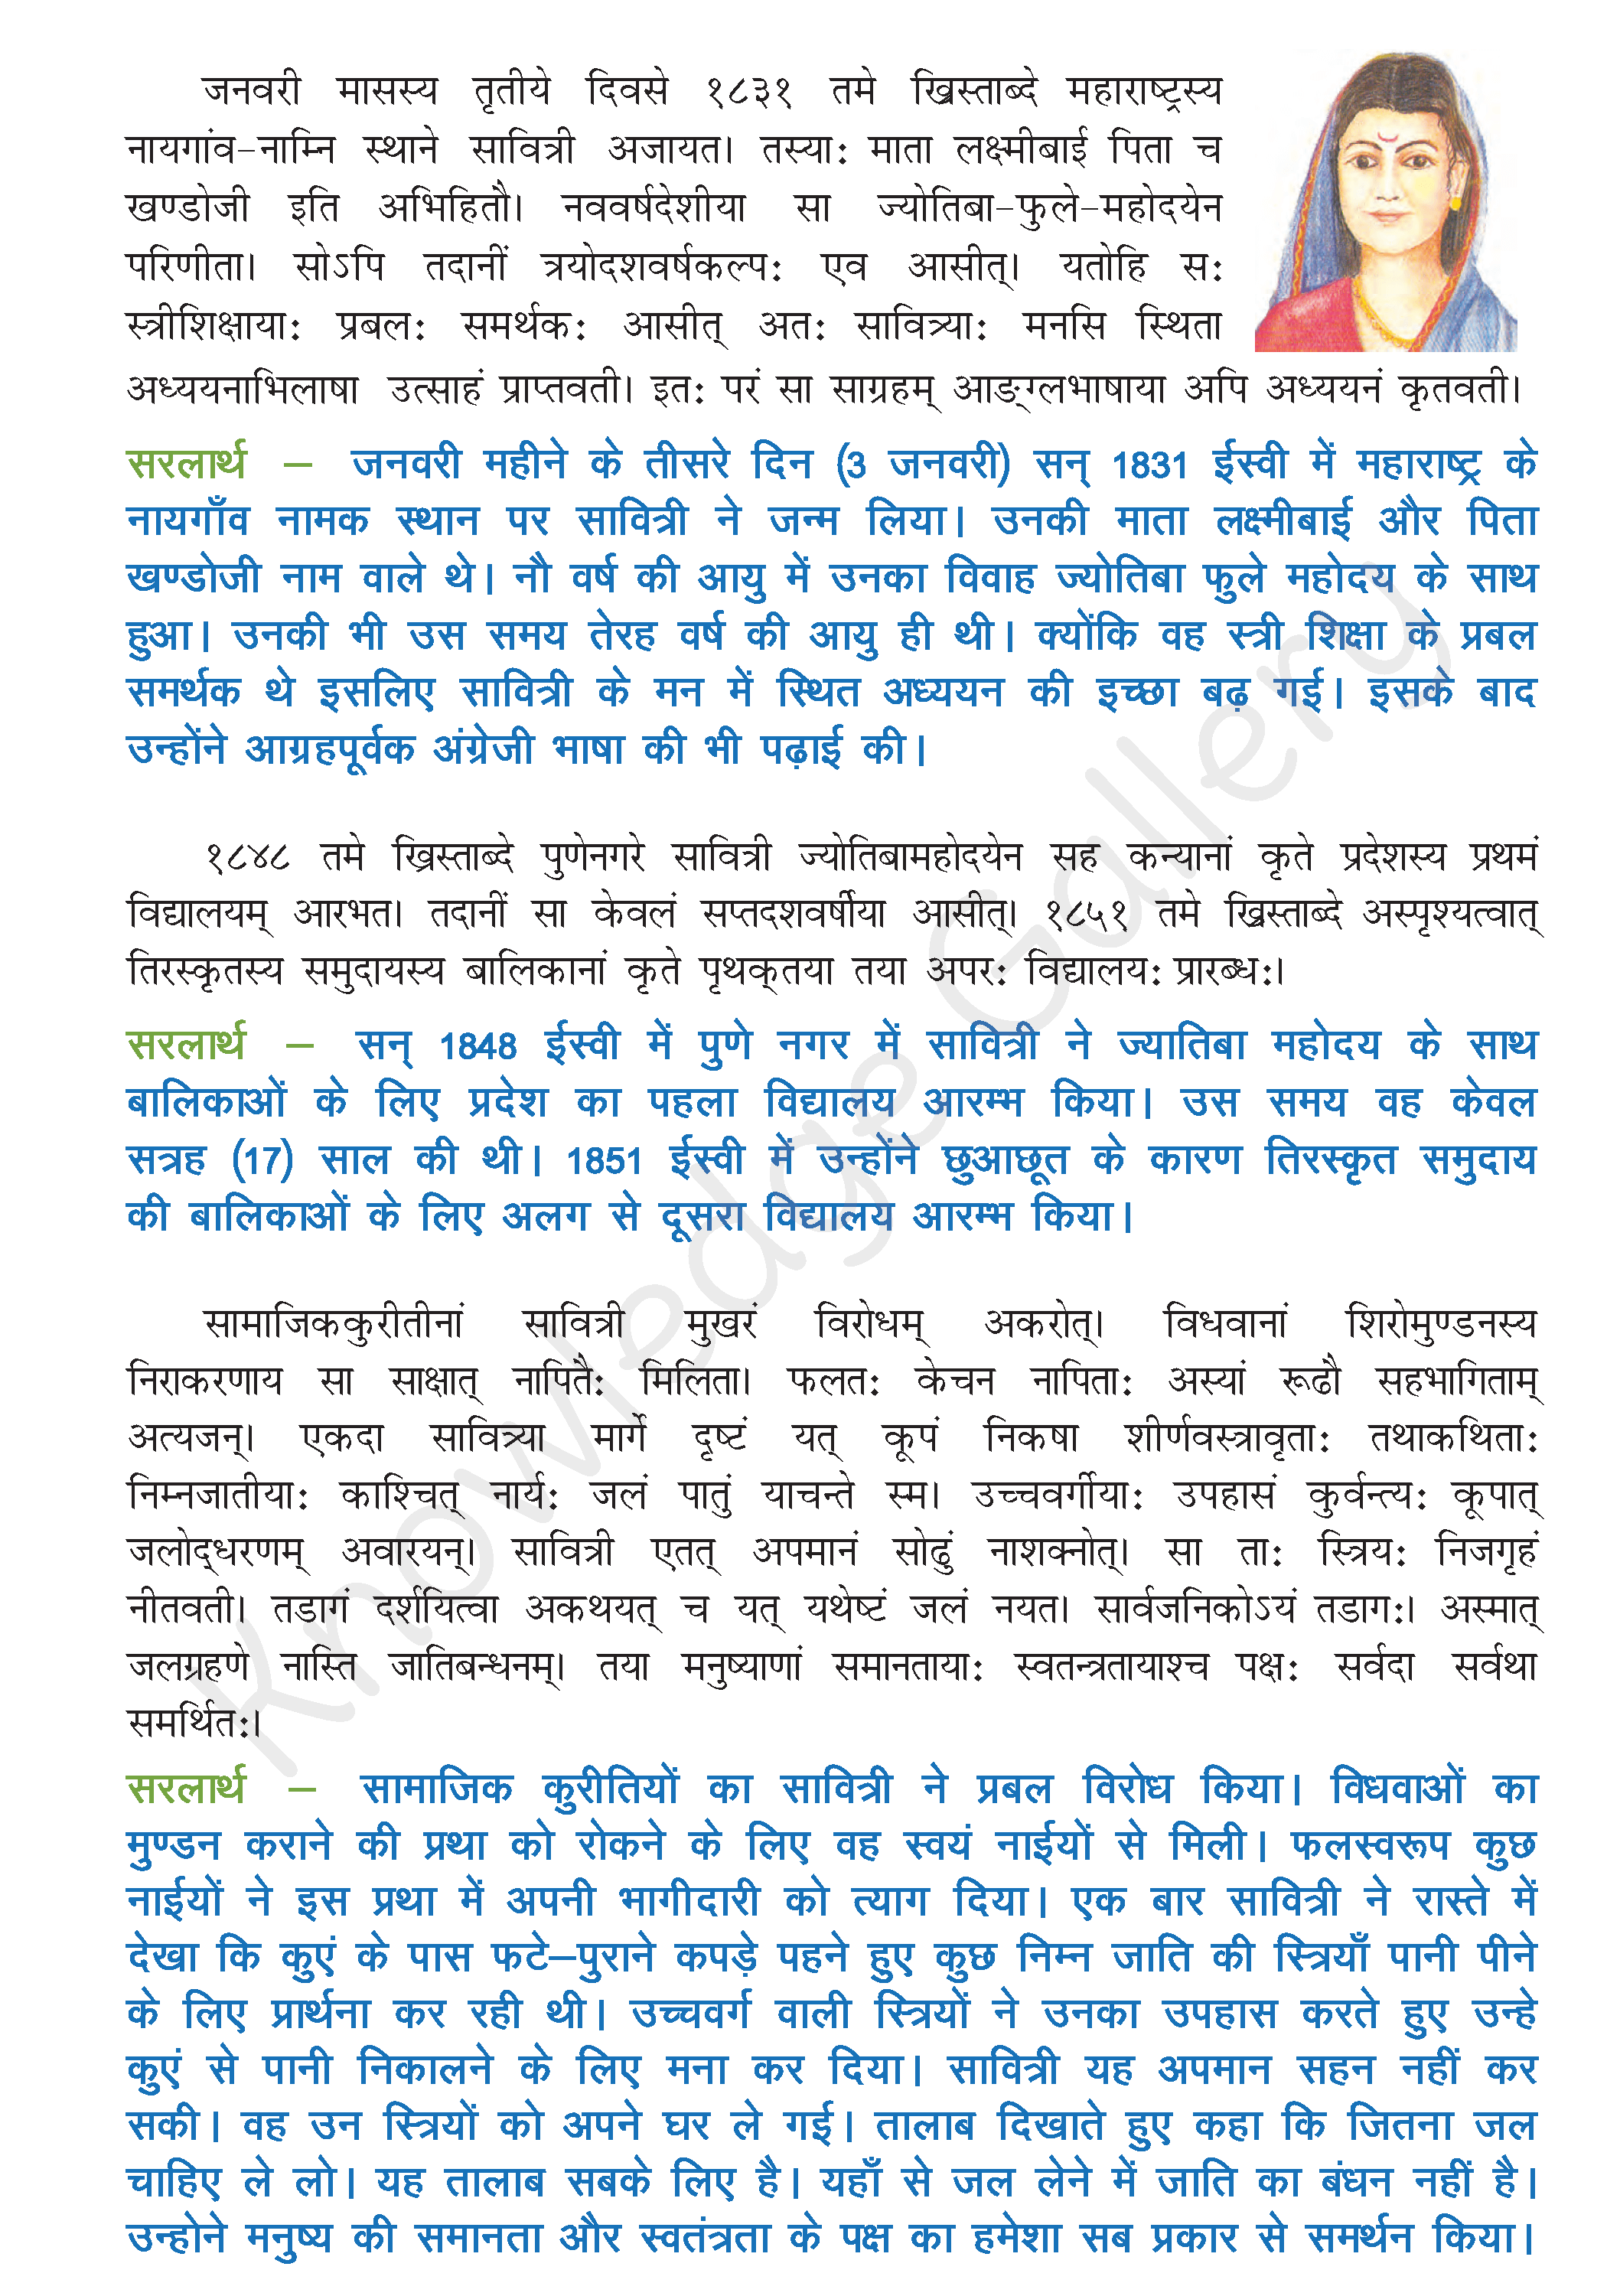 NCERT Solution For Class 8 Sanskrit Chapter 11 part 2